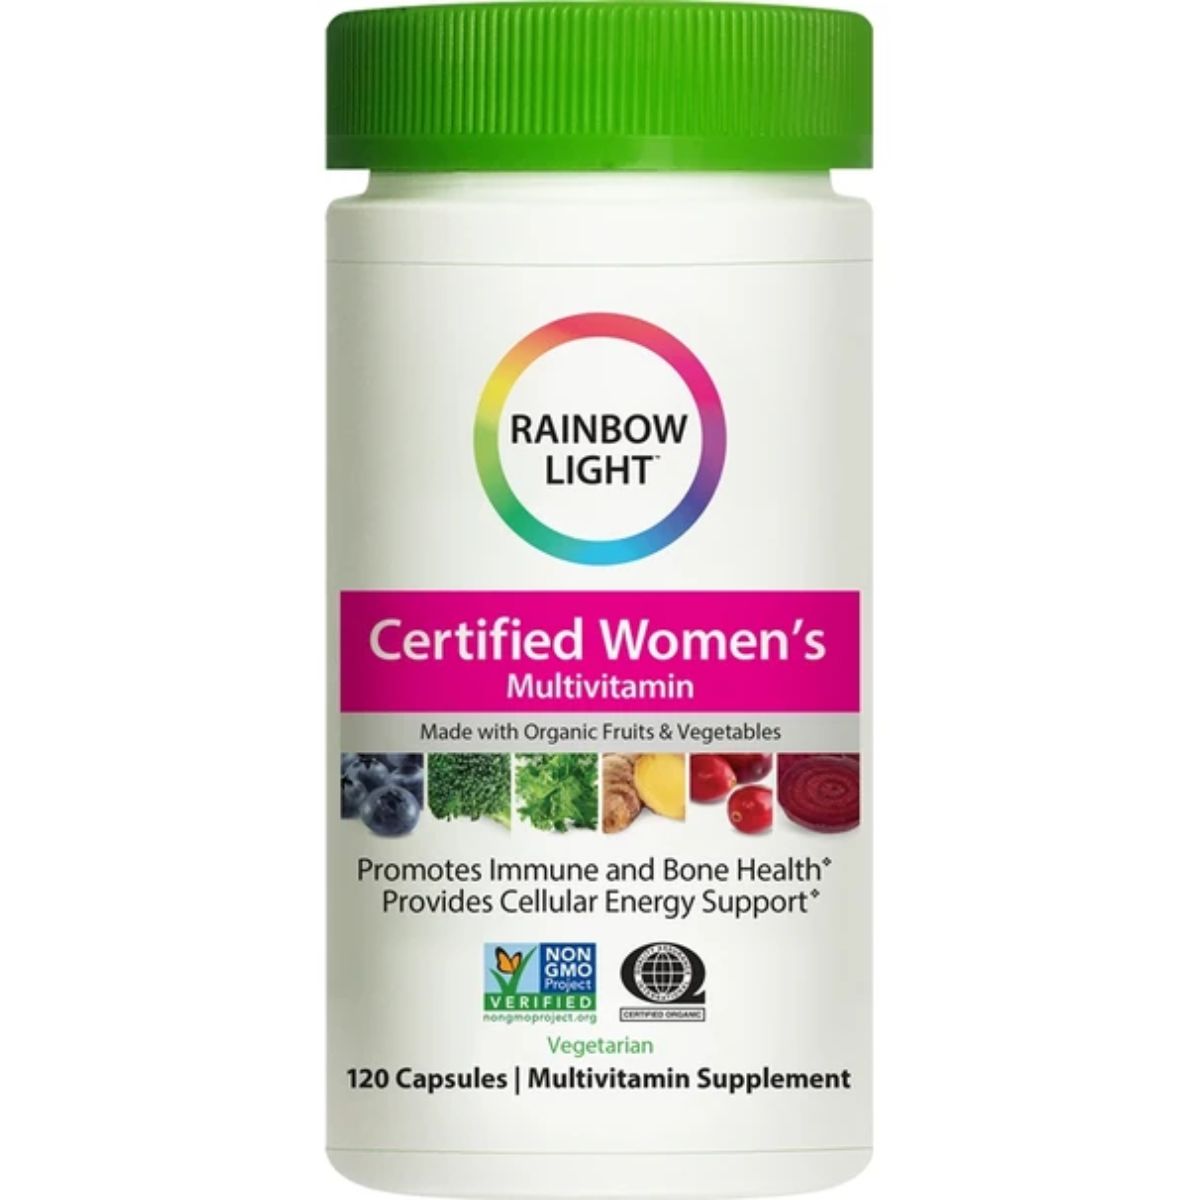 Certified Organics Women’s Multivitamin on sale!